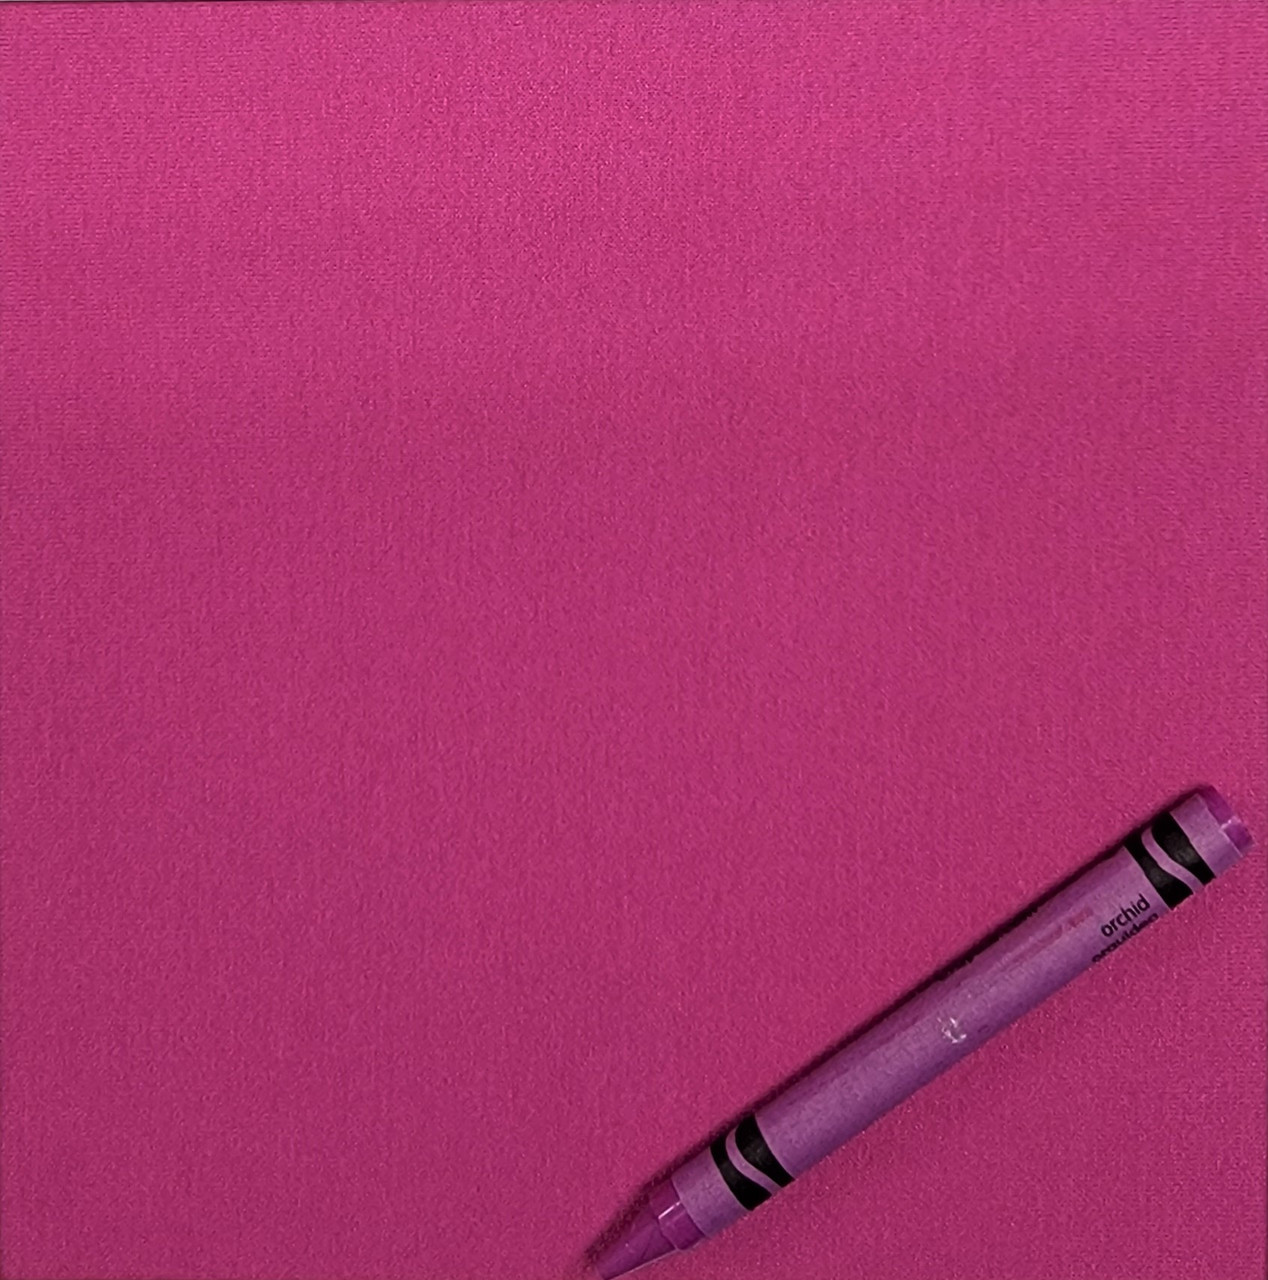 Paradise Pink Polyester/Rayon/Lycra Glazed Ponte Knit 58W